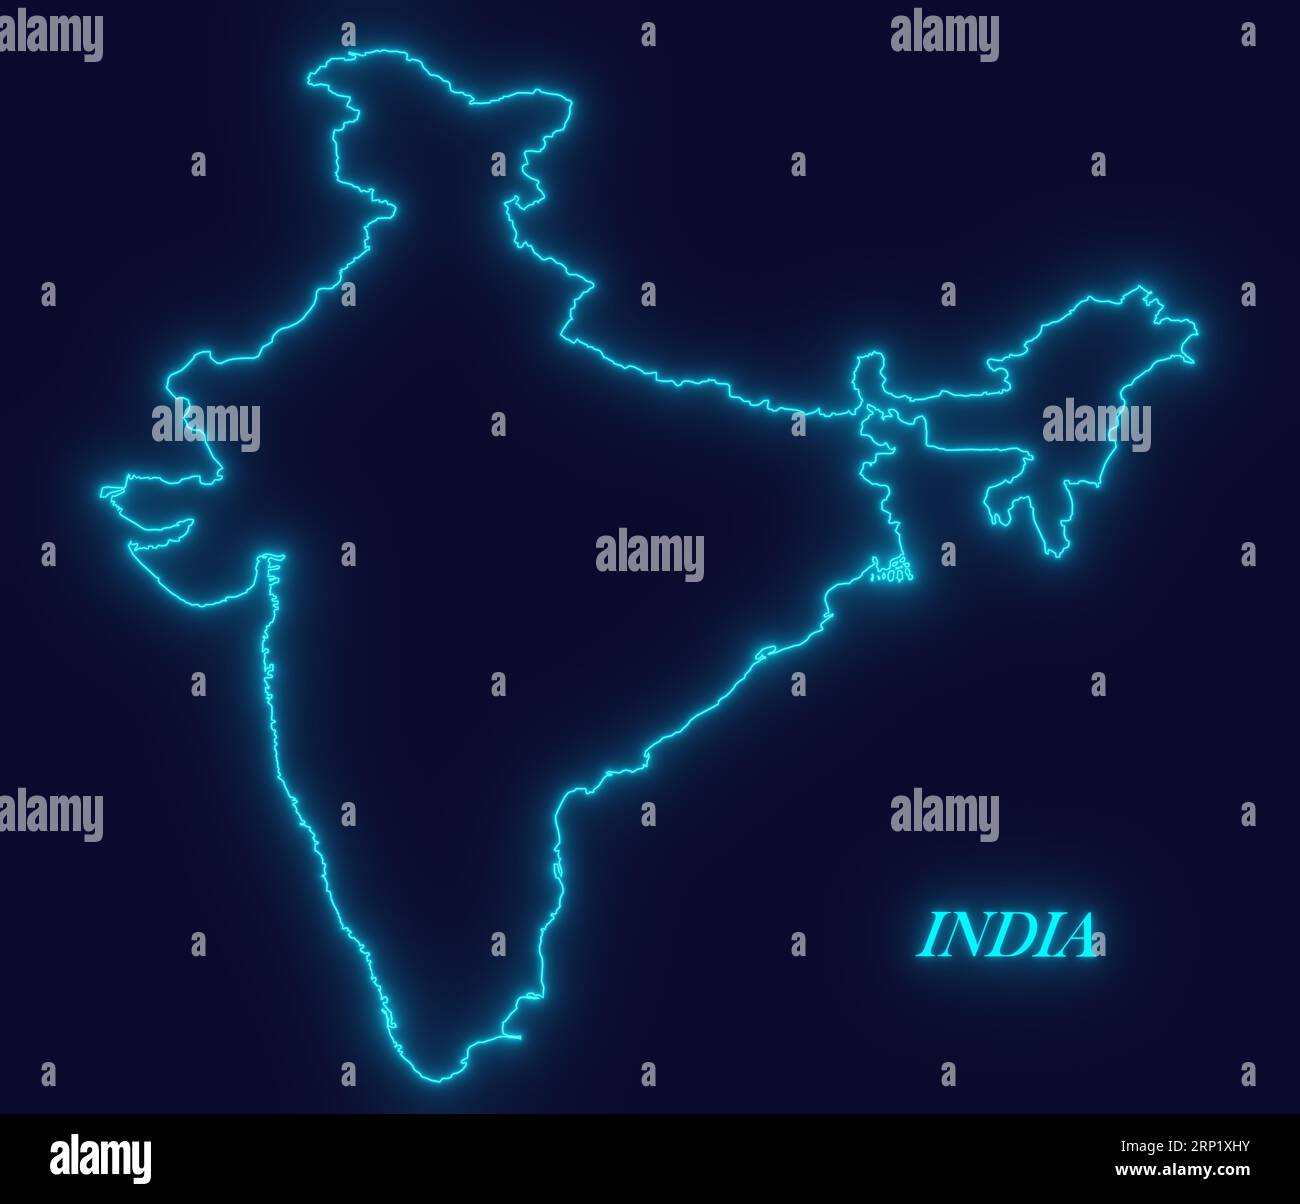 INDIEN Umrisskarte mit Neon-leuchtenden Linien auf dunklem Hintergrund, futuristisches Konzept, INDIEN Neon-Karte, Neon-blaue Kartenumriss, modernes digitales Konzept INDIEN Stockfoto